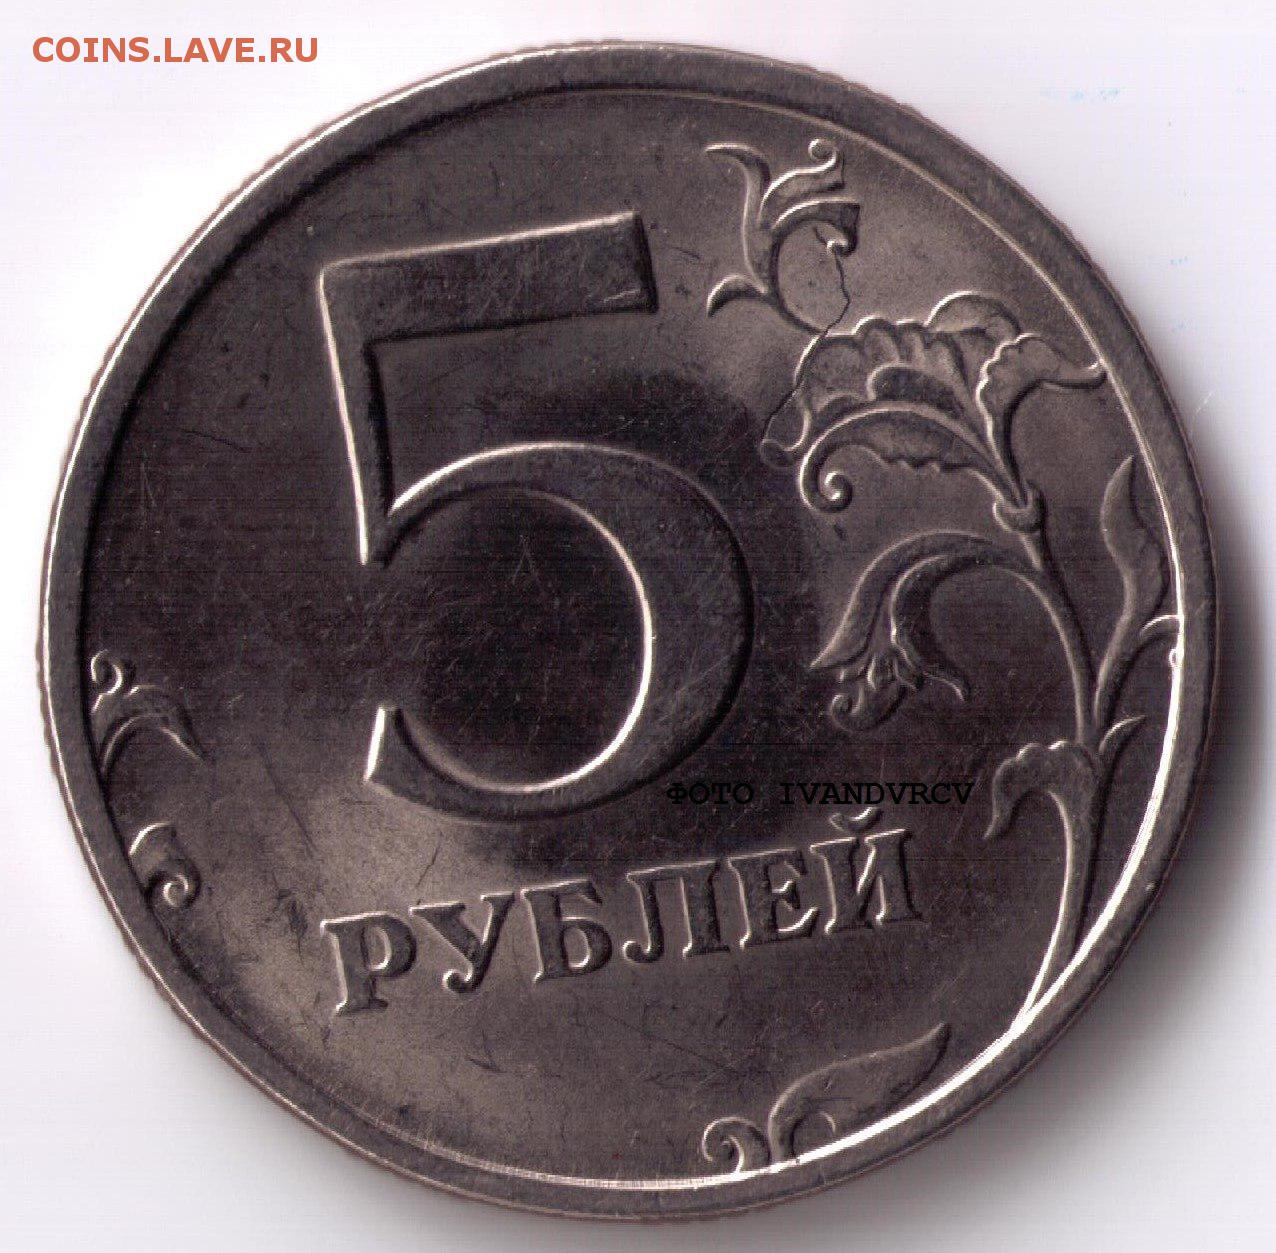 Продам 5 рублей 1997